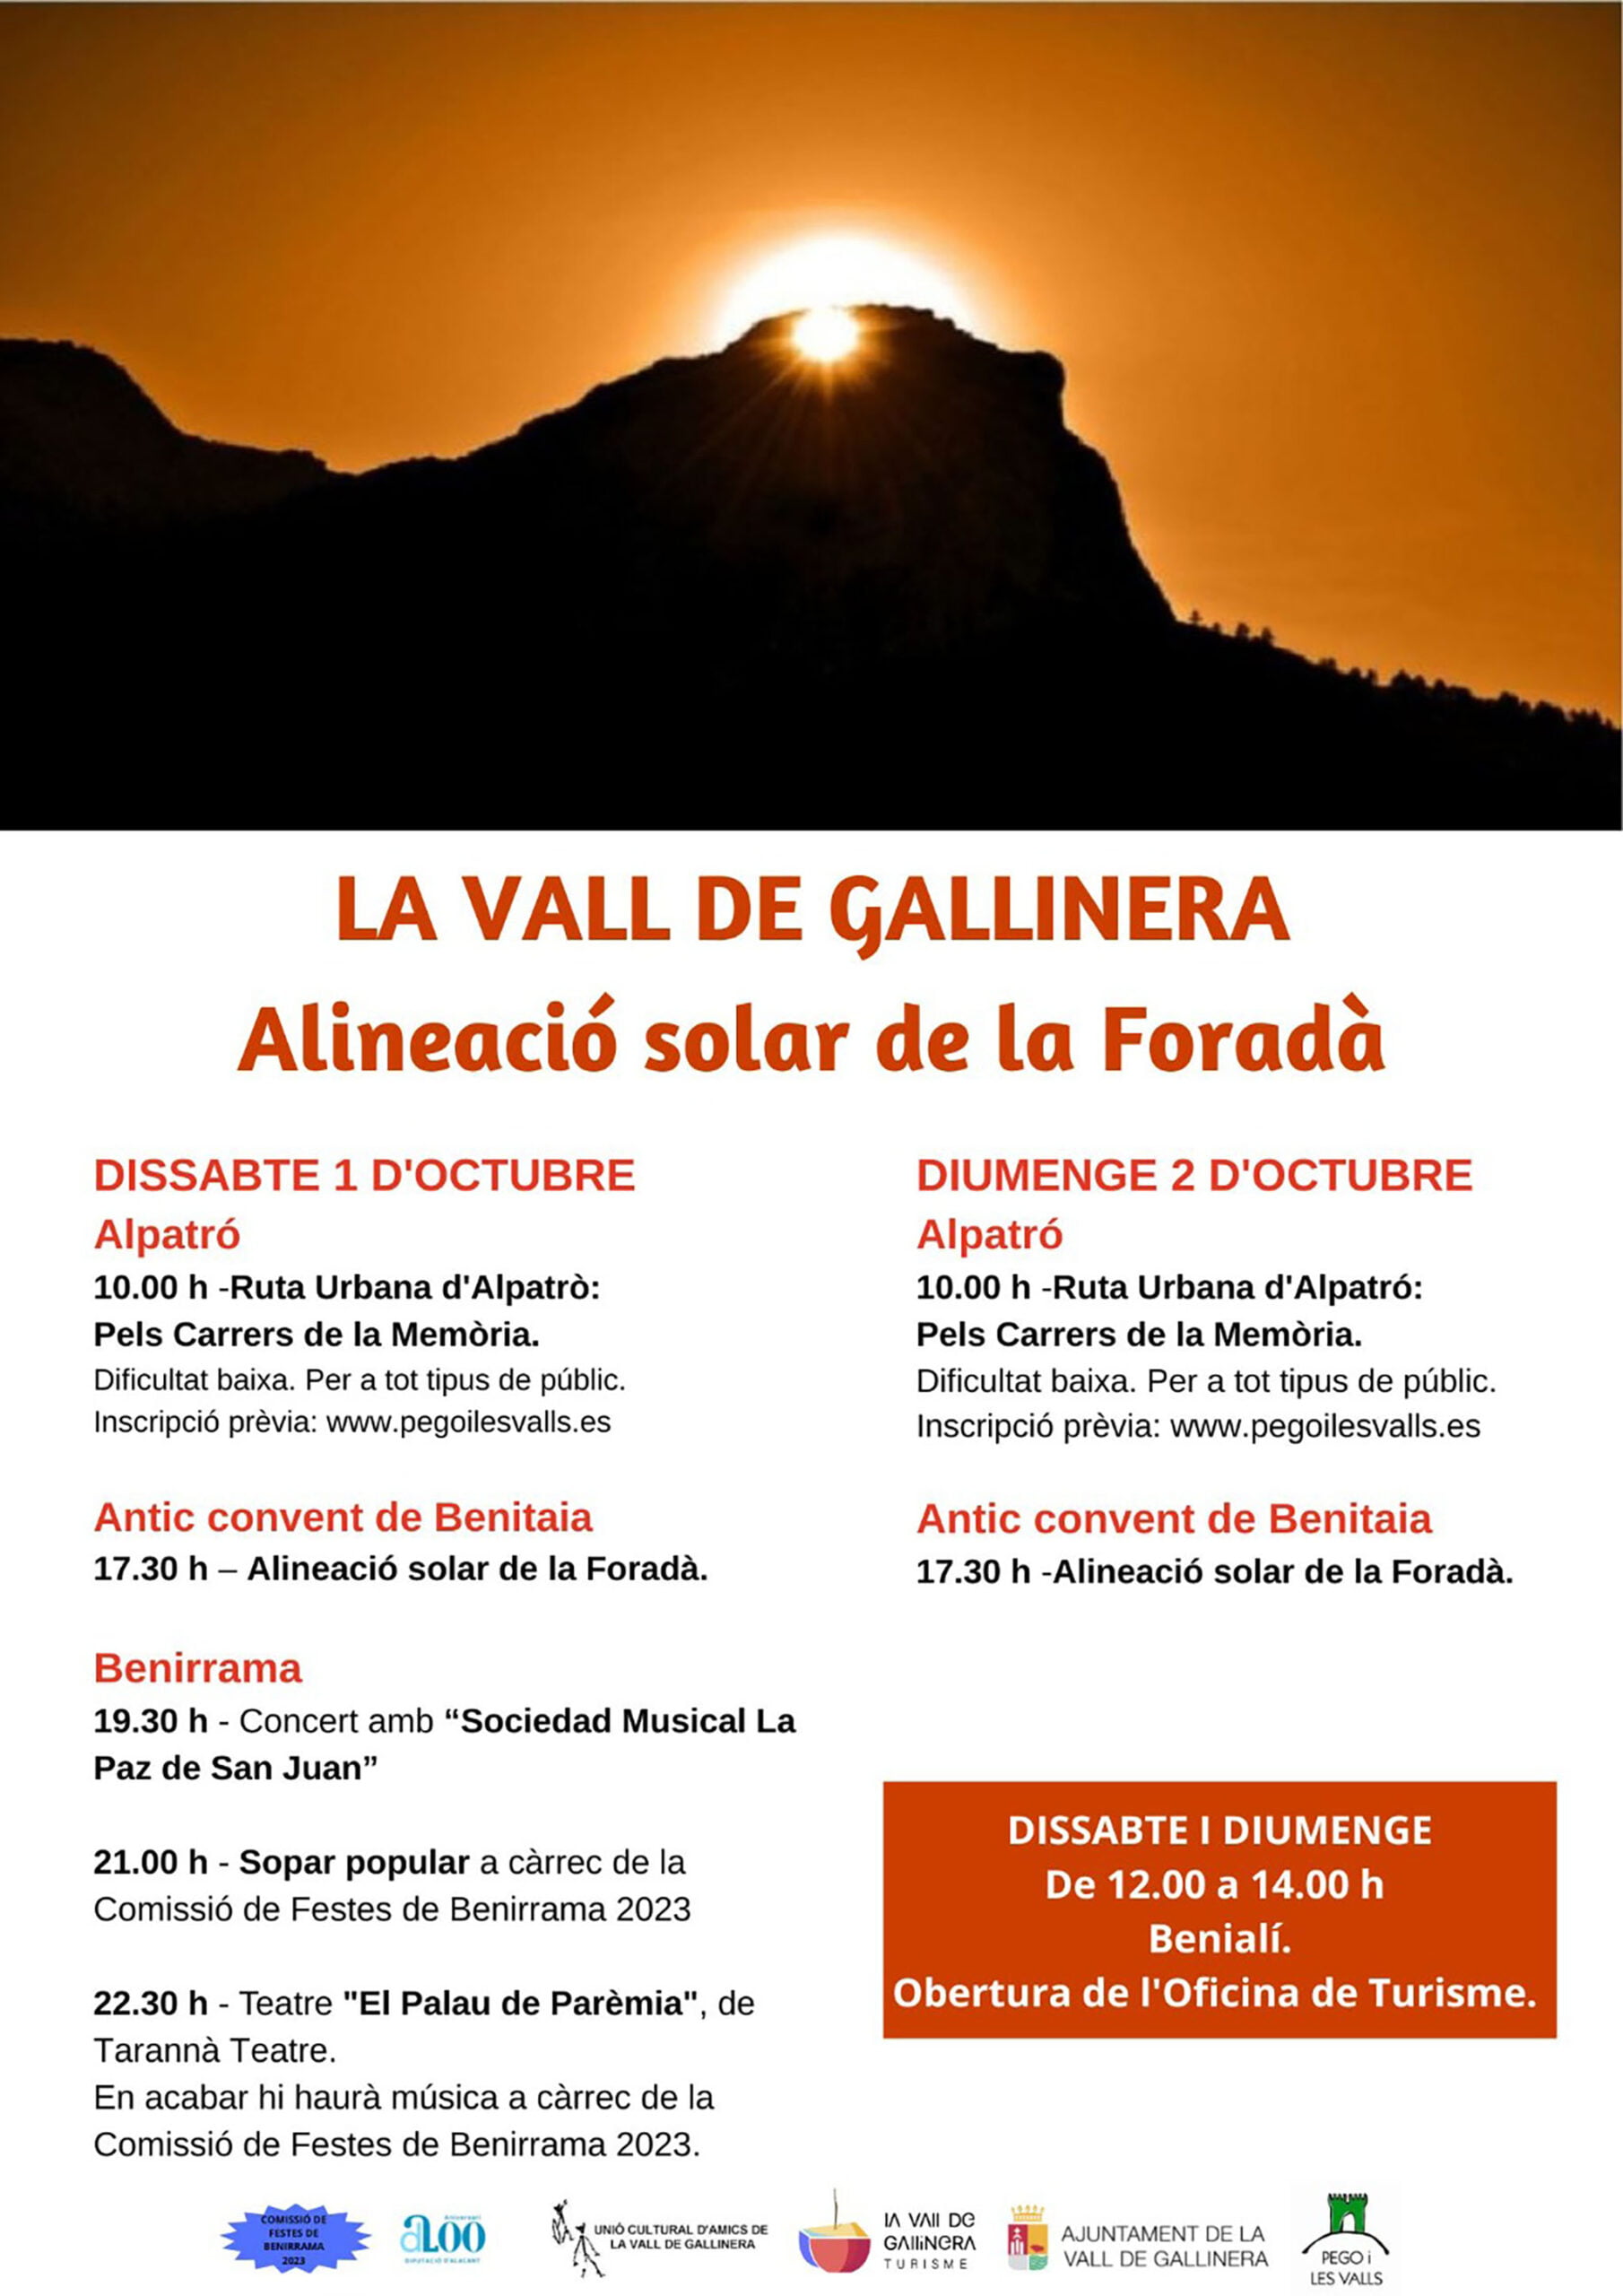 Actividades en La Vall de Gallinera durante l’Alineació Solar de la Foradà en octubre de 2022